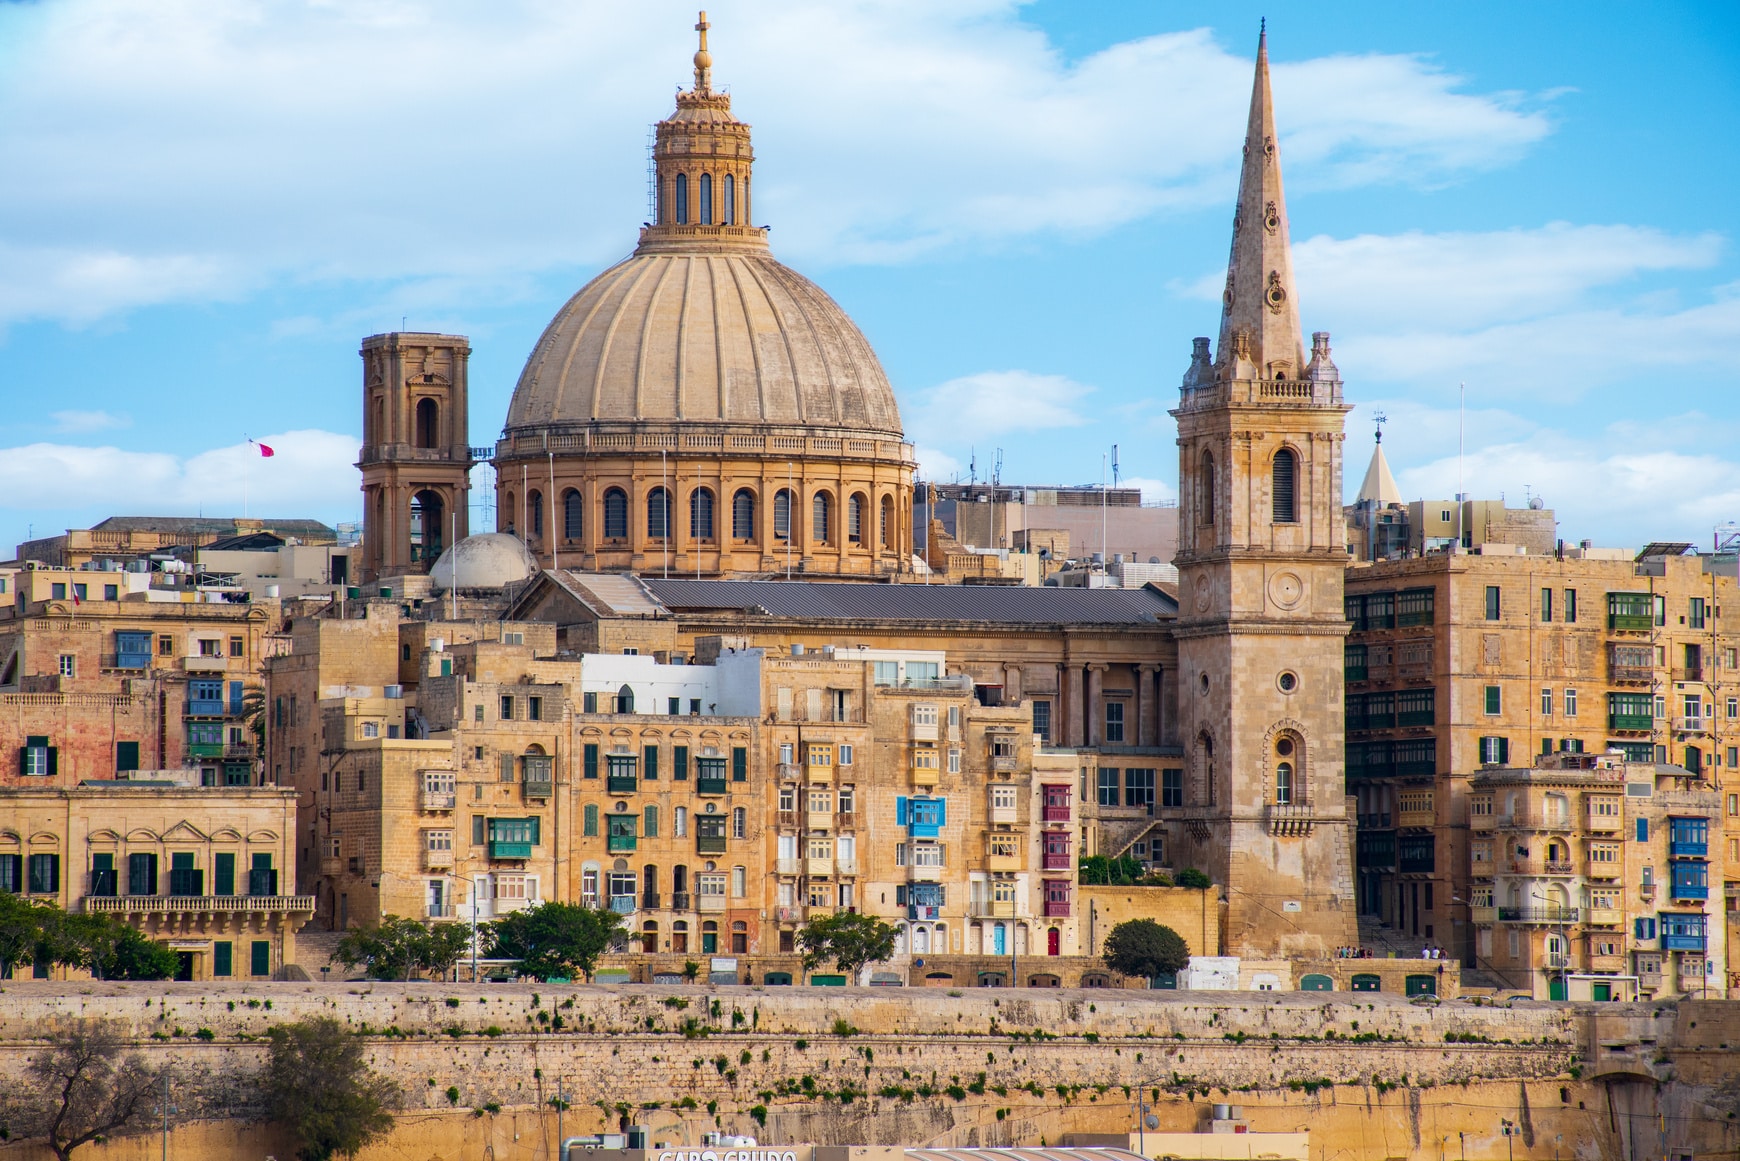 Viatge en grup a Malta al mes de juny